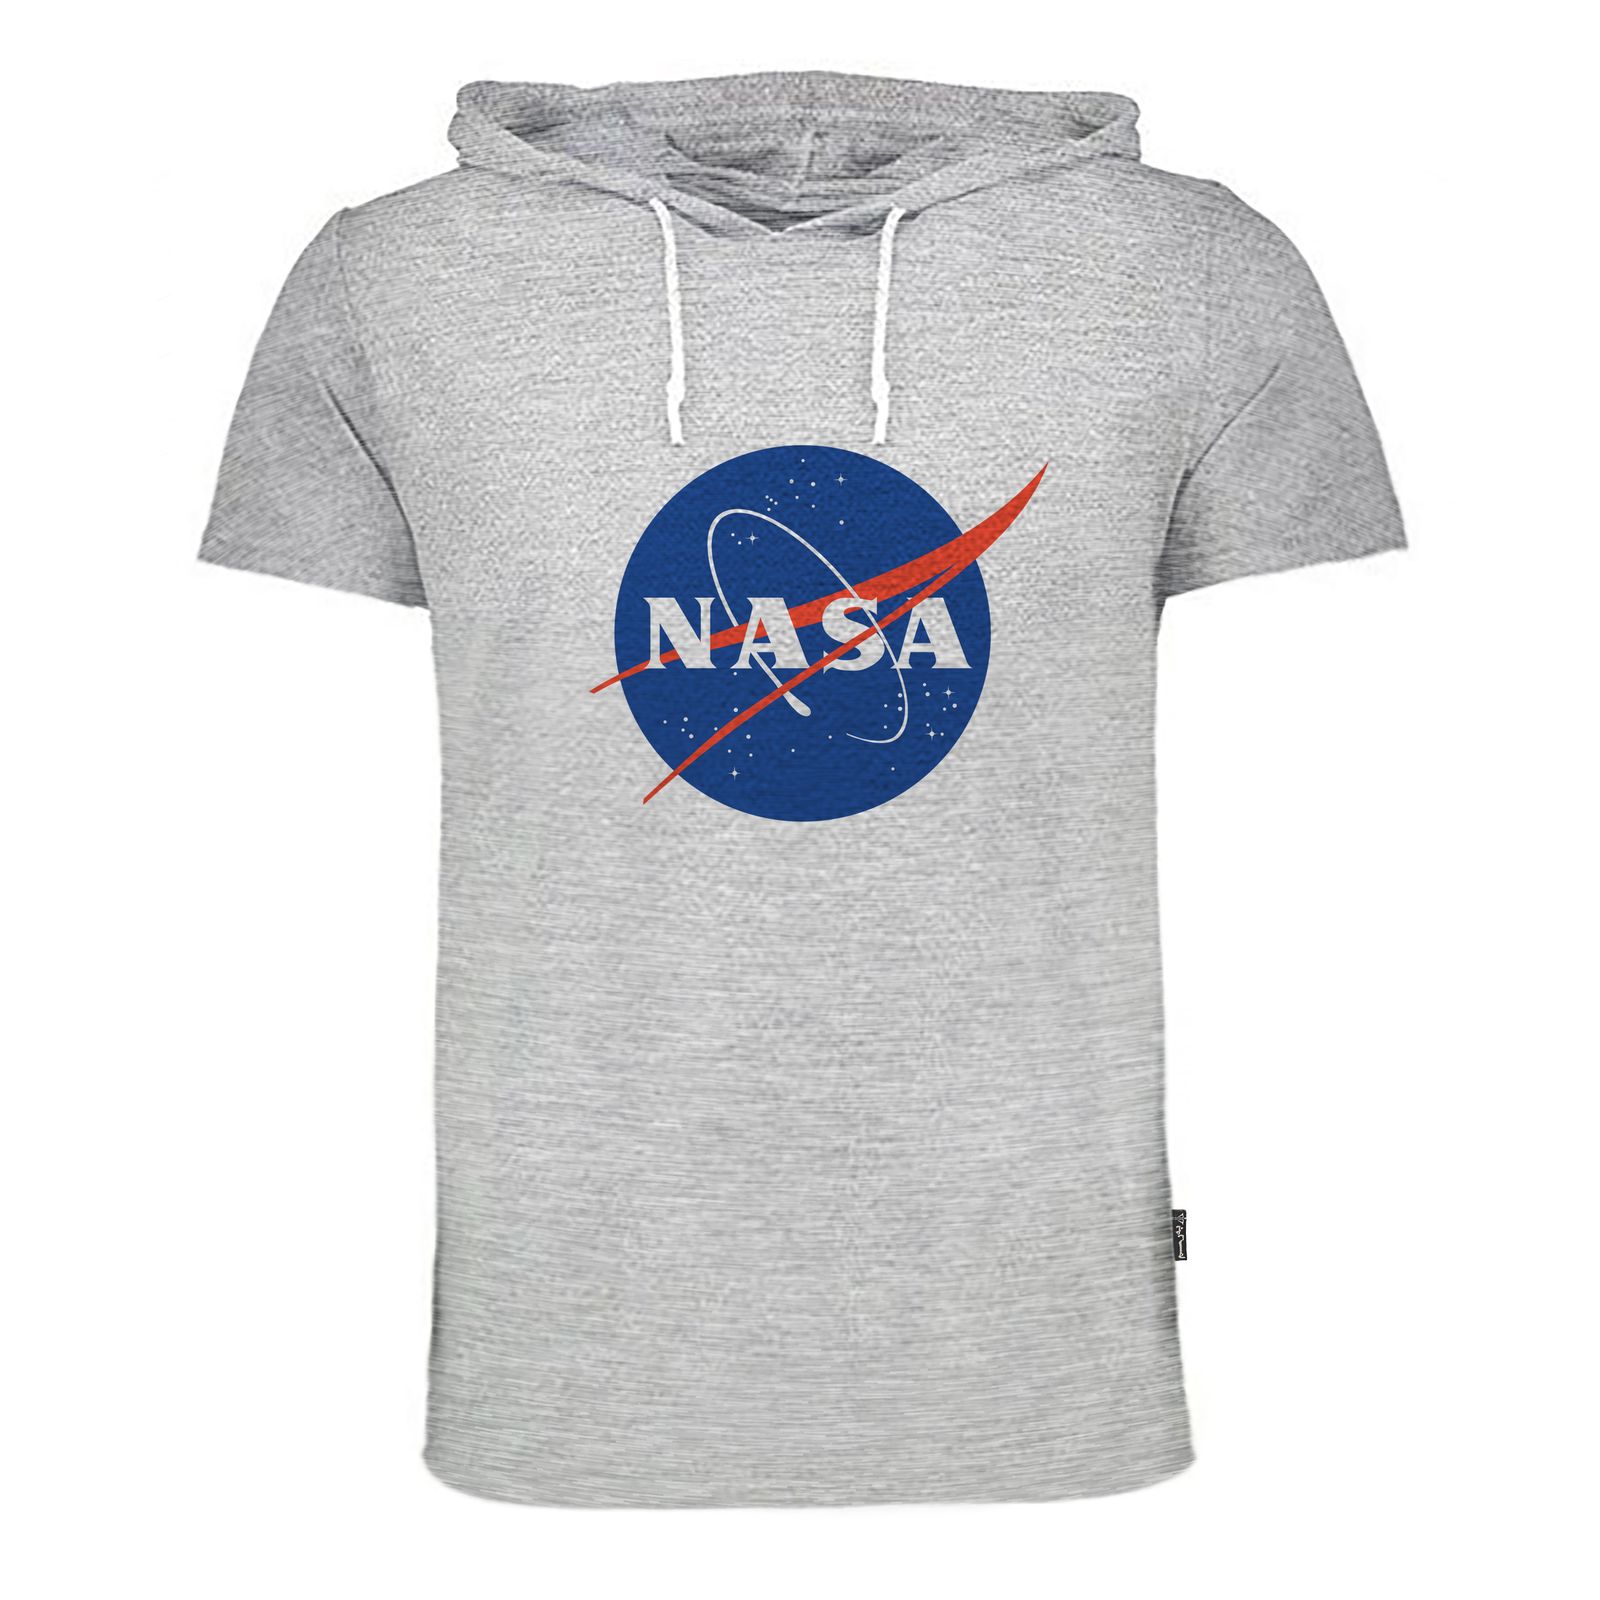 تی شرت کلاه دار زنانه به رسم مدل ناسا کد 9128 -  - 3